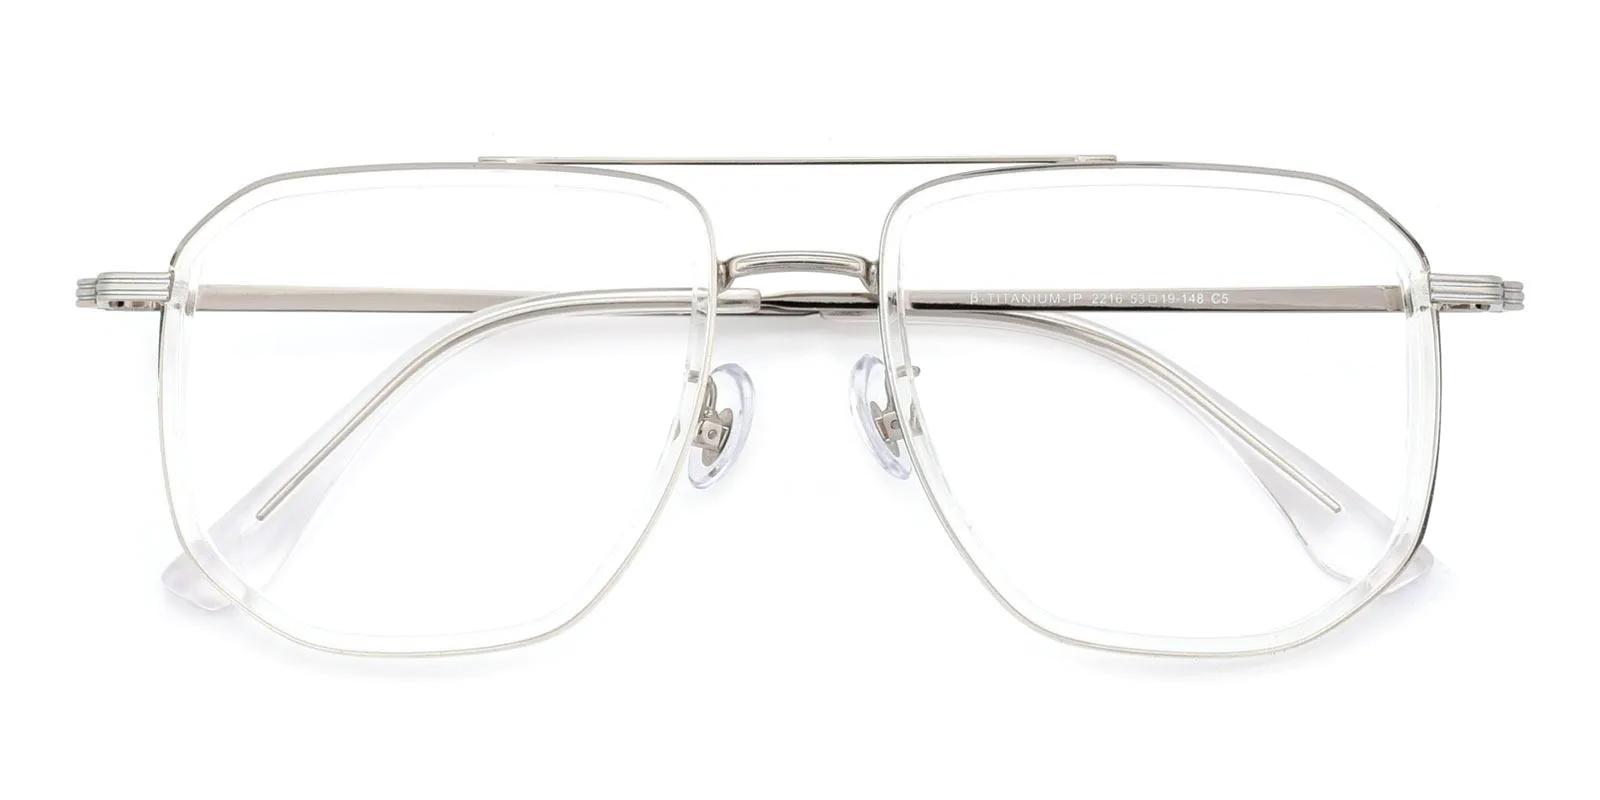 Doxoine Fclear Titanium , TR Eyeglasses , NosePads Frames from ABBE Glasses